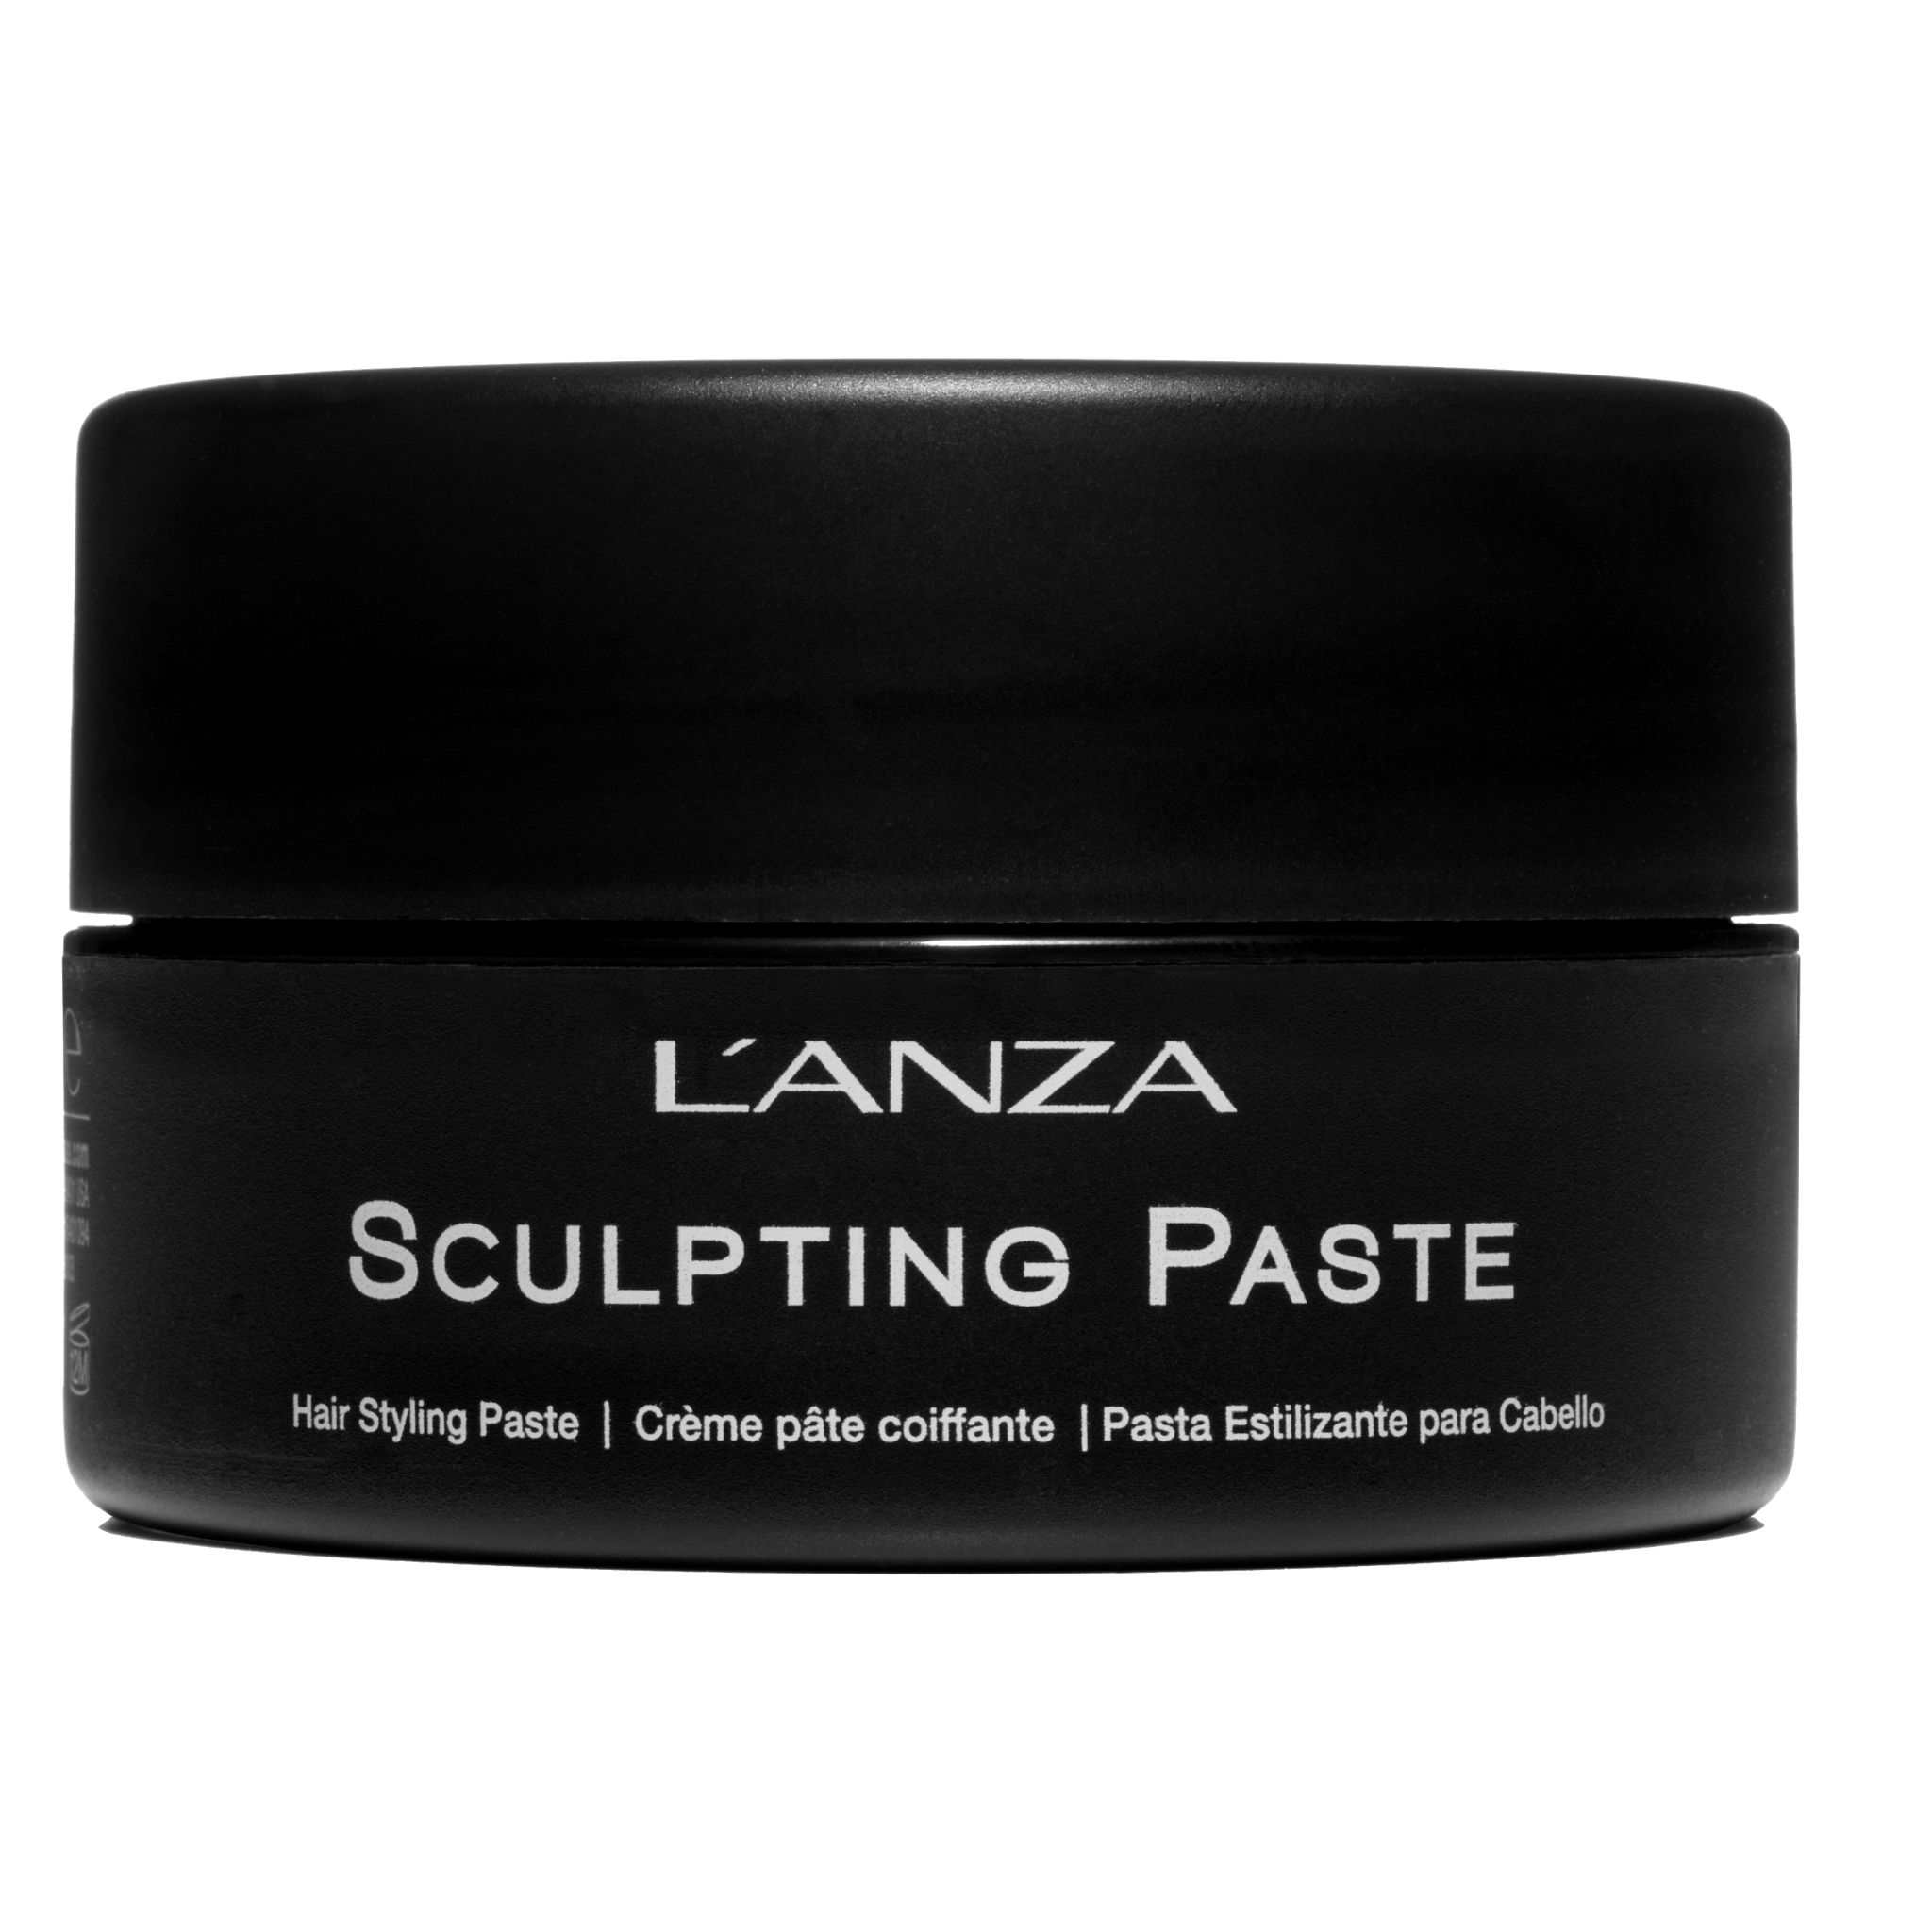 L’Anza. Healing Style Crème Pâte Sculptante Sculpting paste - 100ml - Concept C. Shop